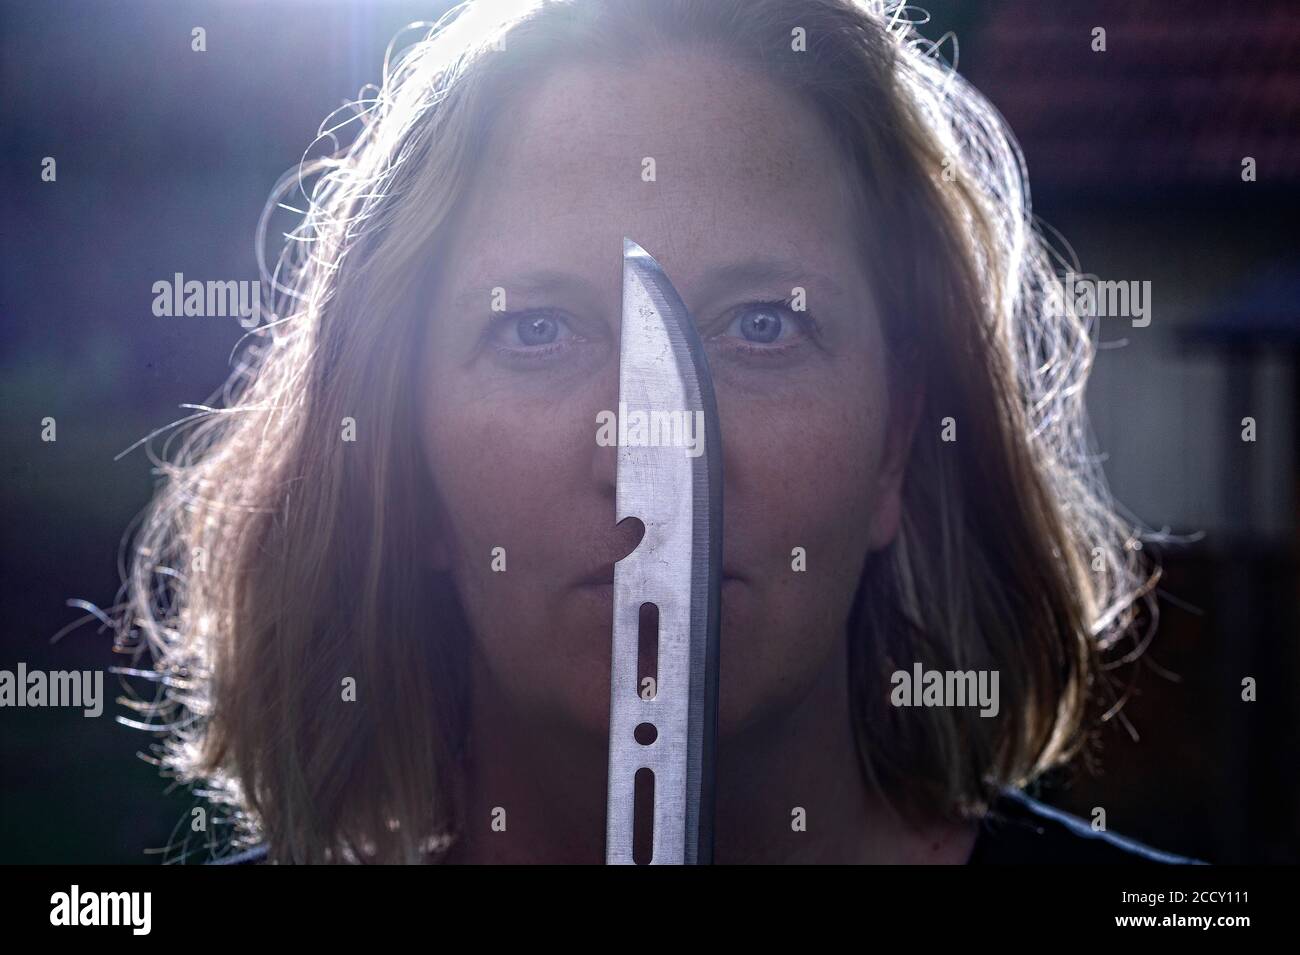 Portrait, mystérieuse femme avec couteau devant son visage contre la lumière, scène d'horreur, scène de crime, Allemagne Banque D'Images